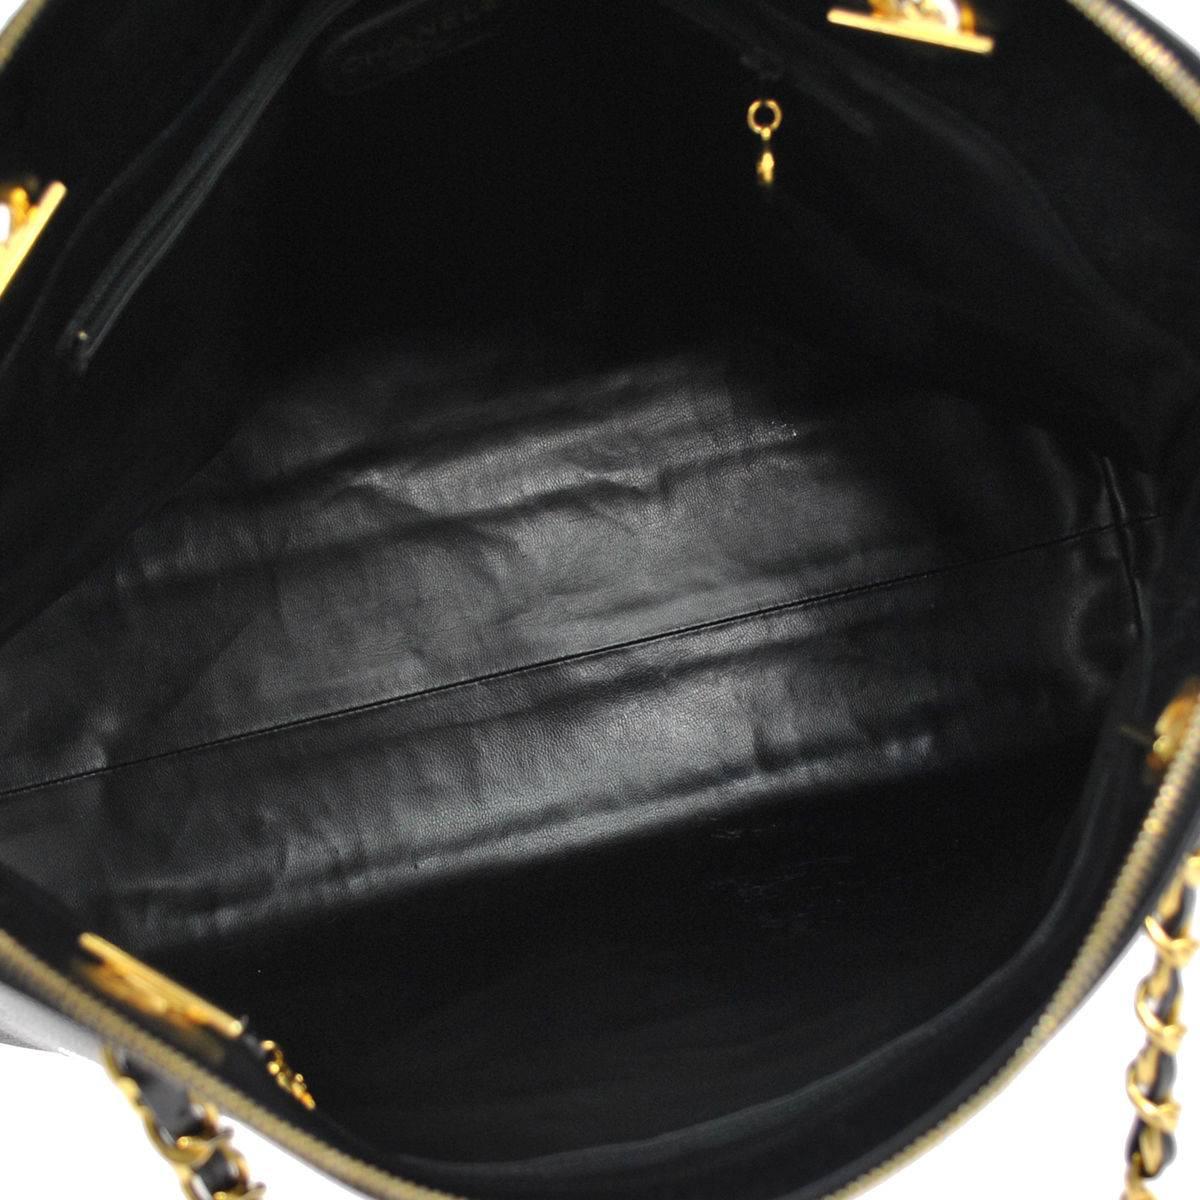 Chanel Black Caviar Leather Carryall Shopper Weekender Travel Shoulder Bag 4